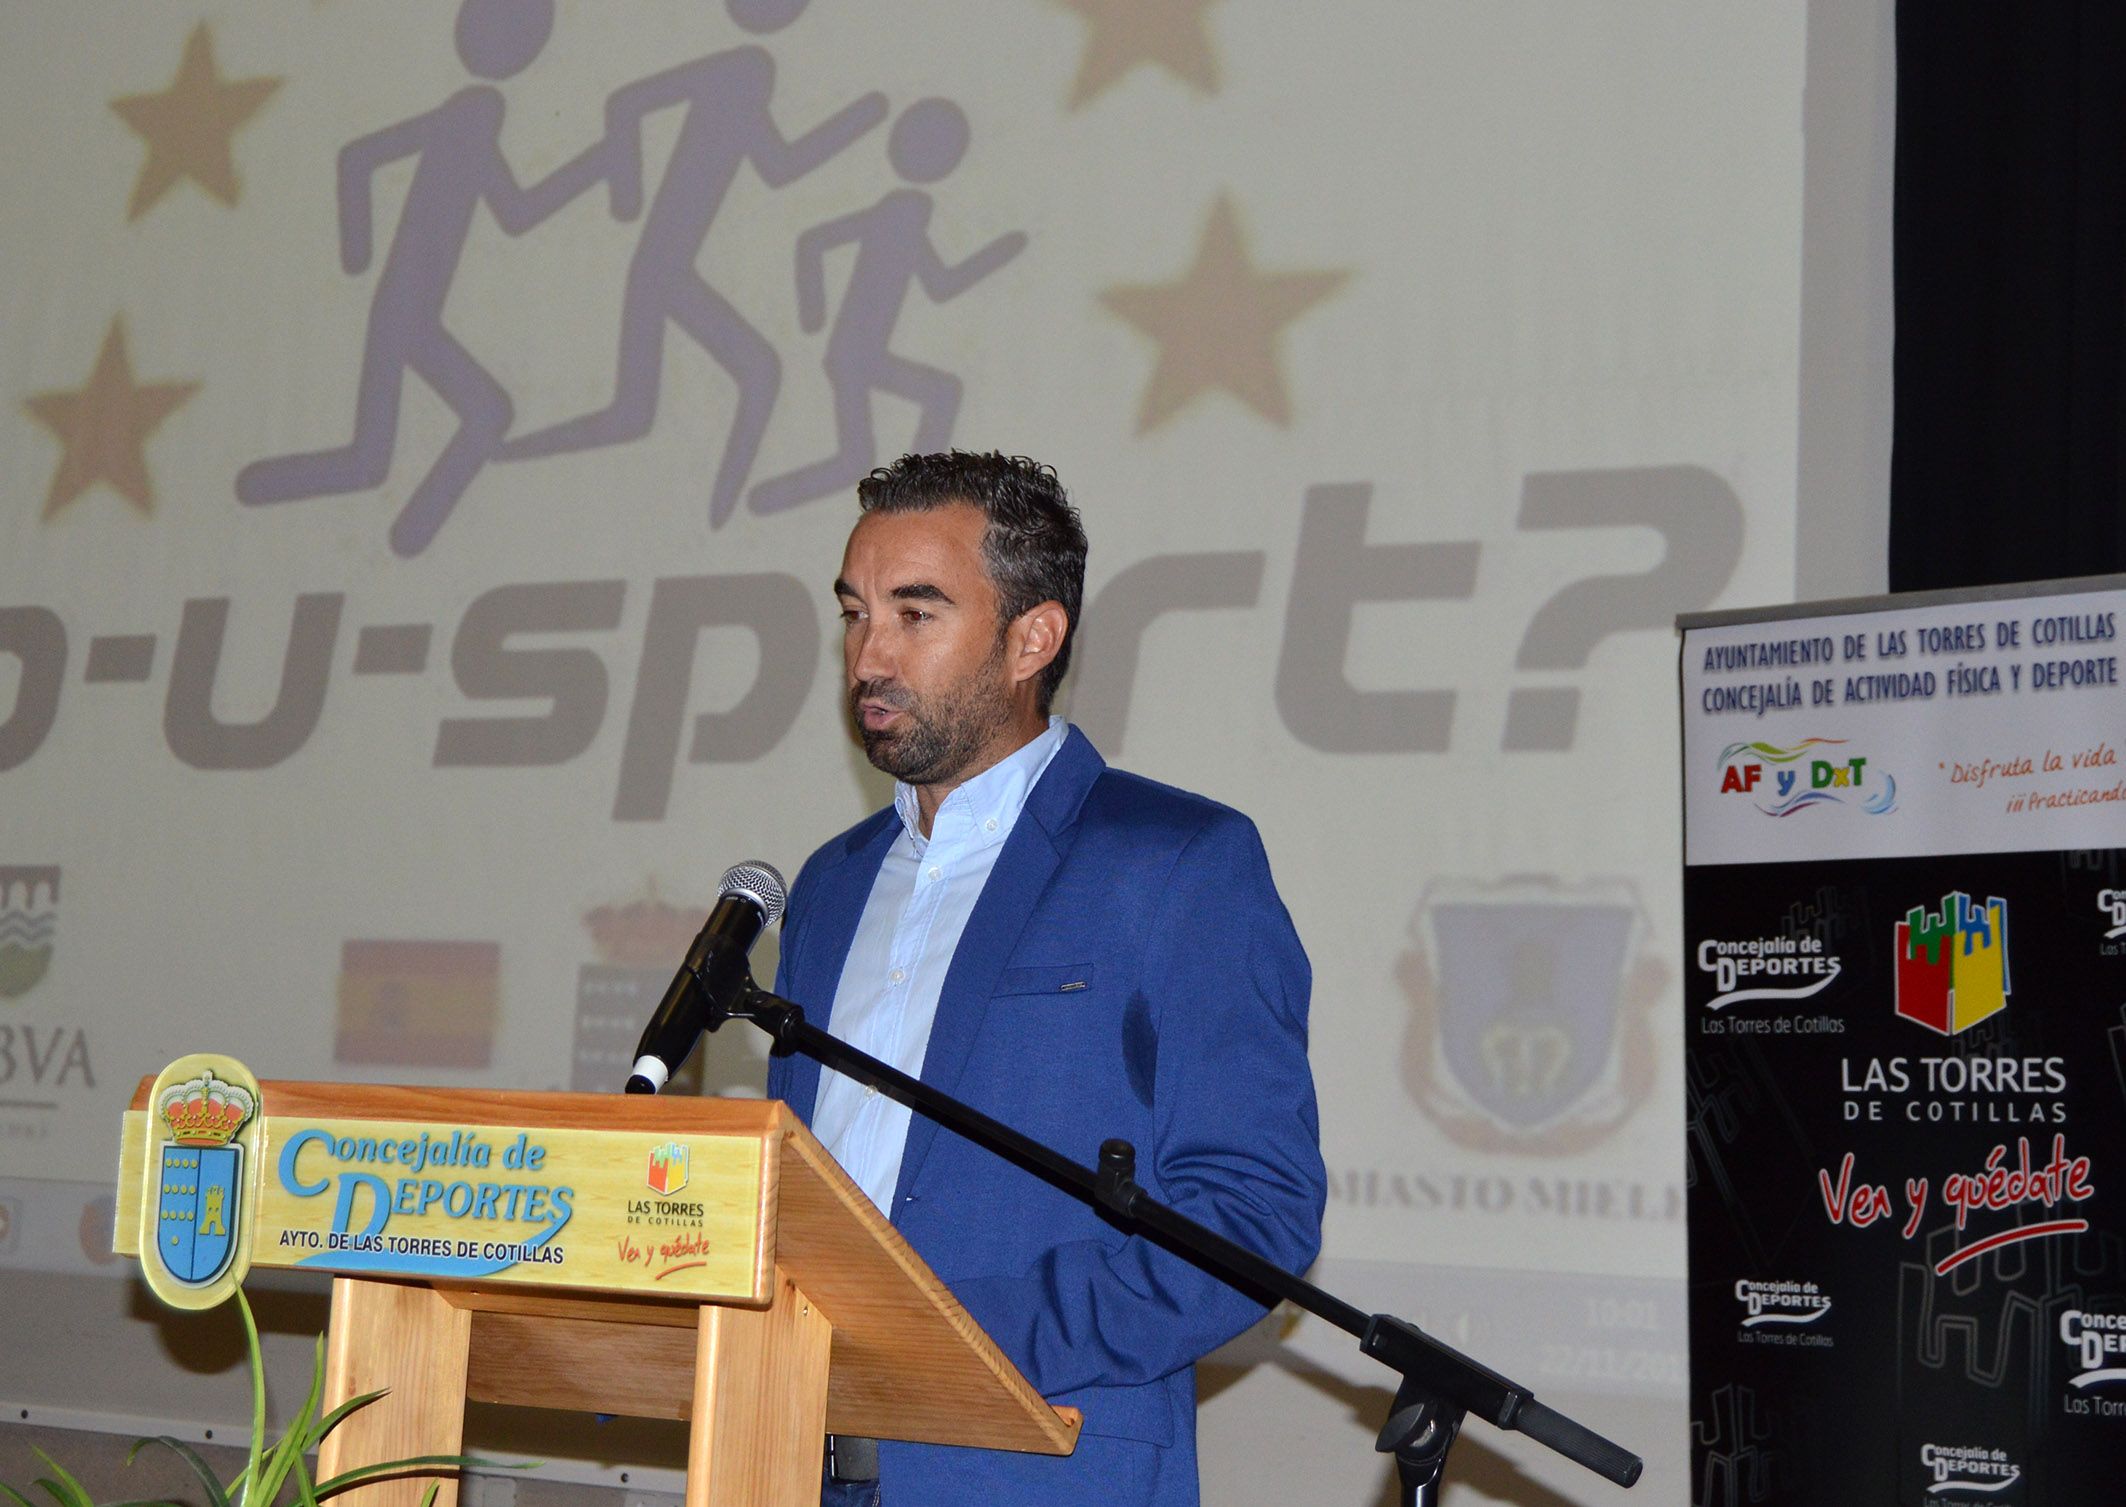 Jornada sobre deporte y salud del proyecto europeo ‘Do-U-Sport’ - Las Torres de Cotillas2